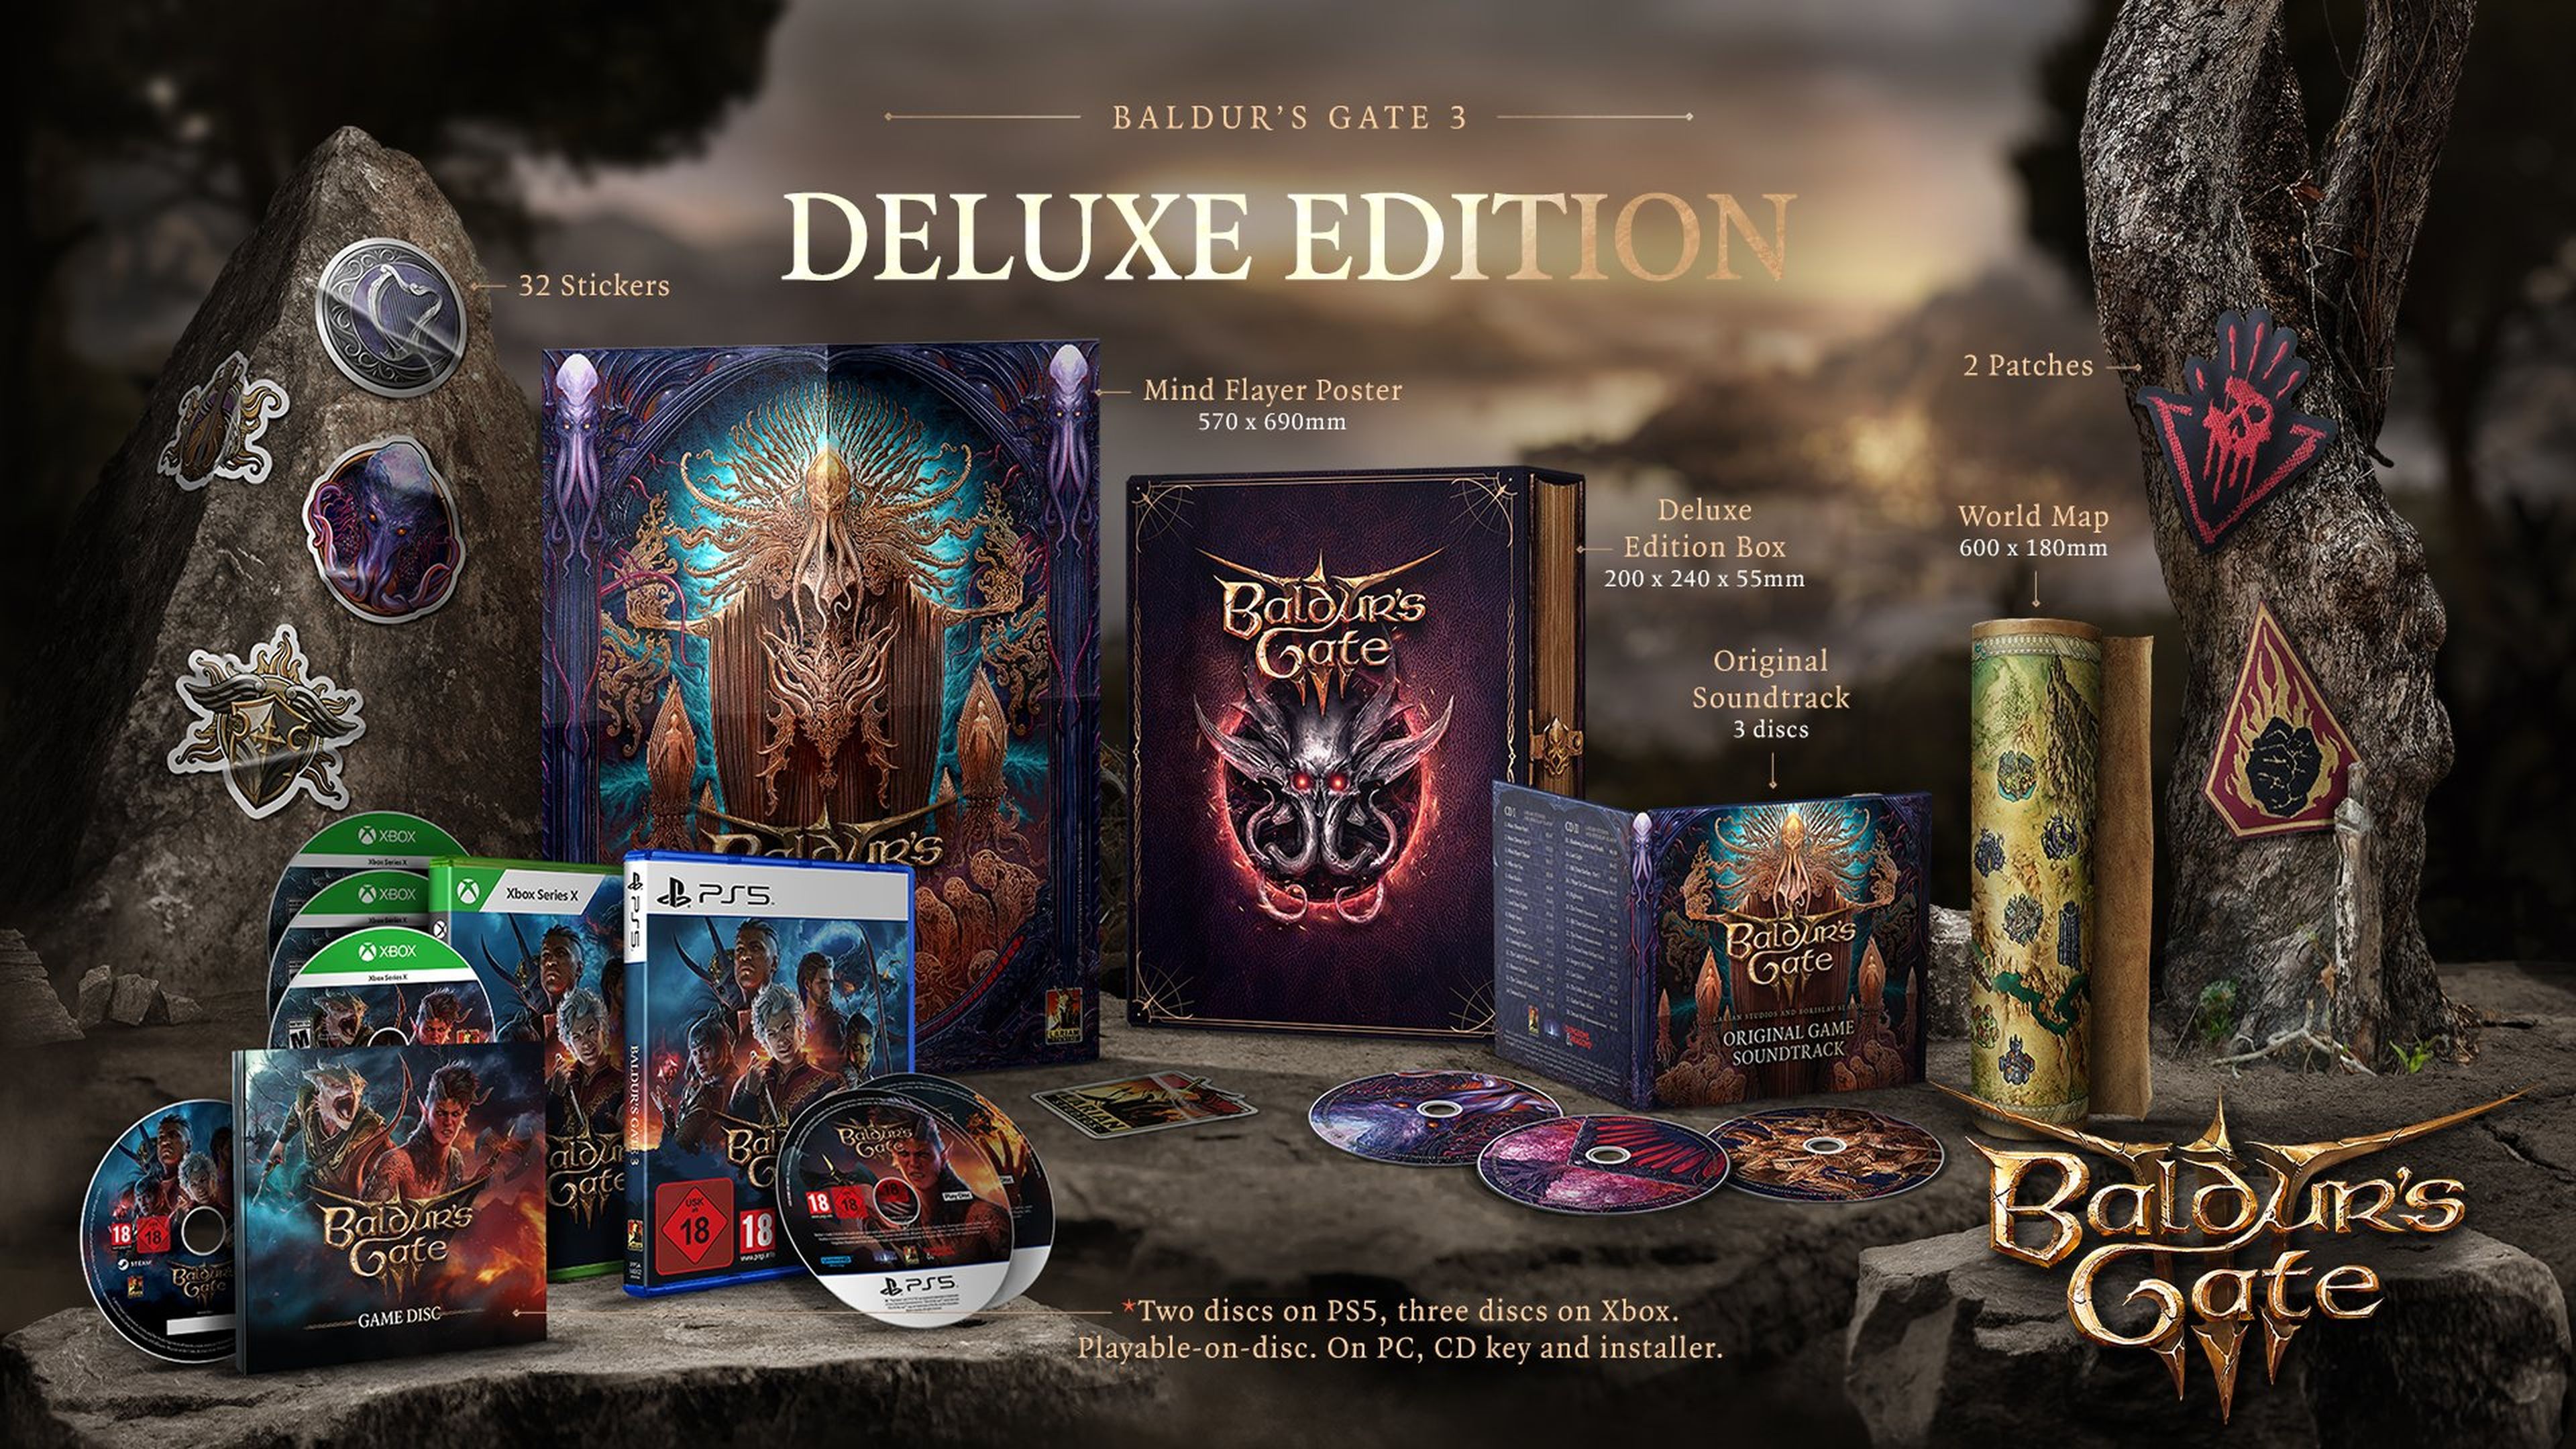 Baldur's Gate 3 Deluxe